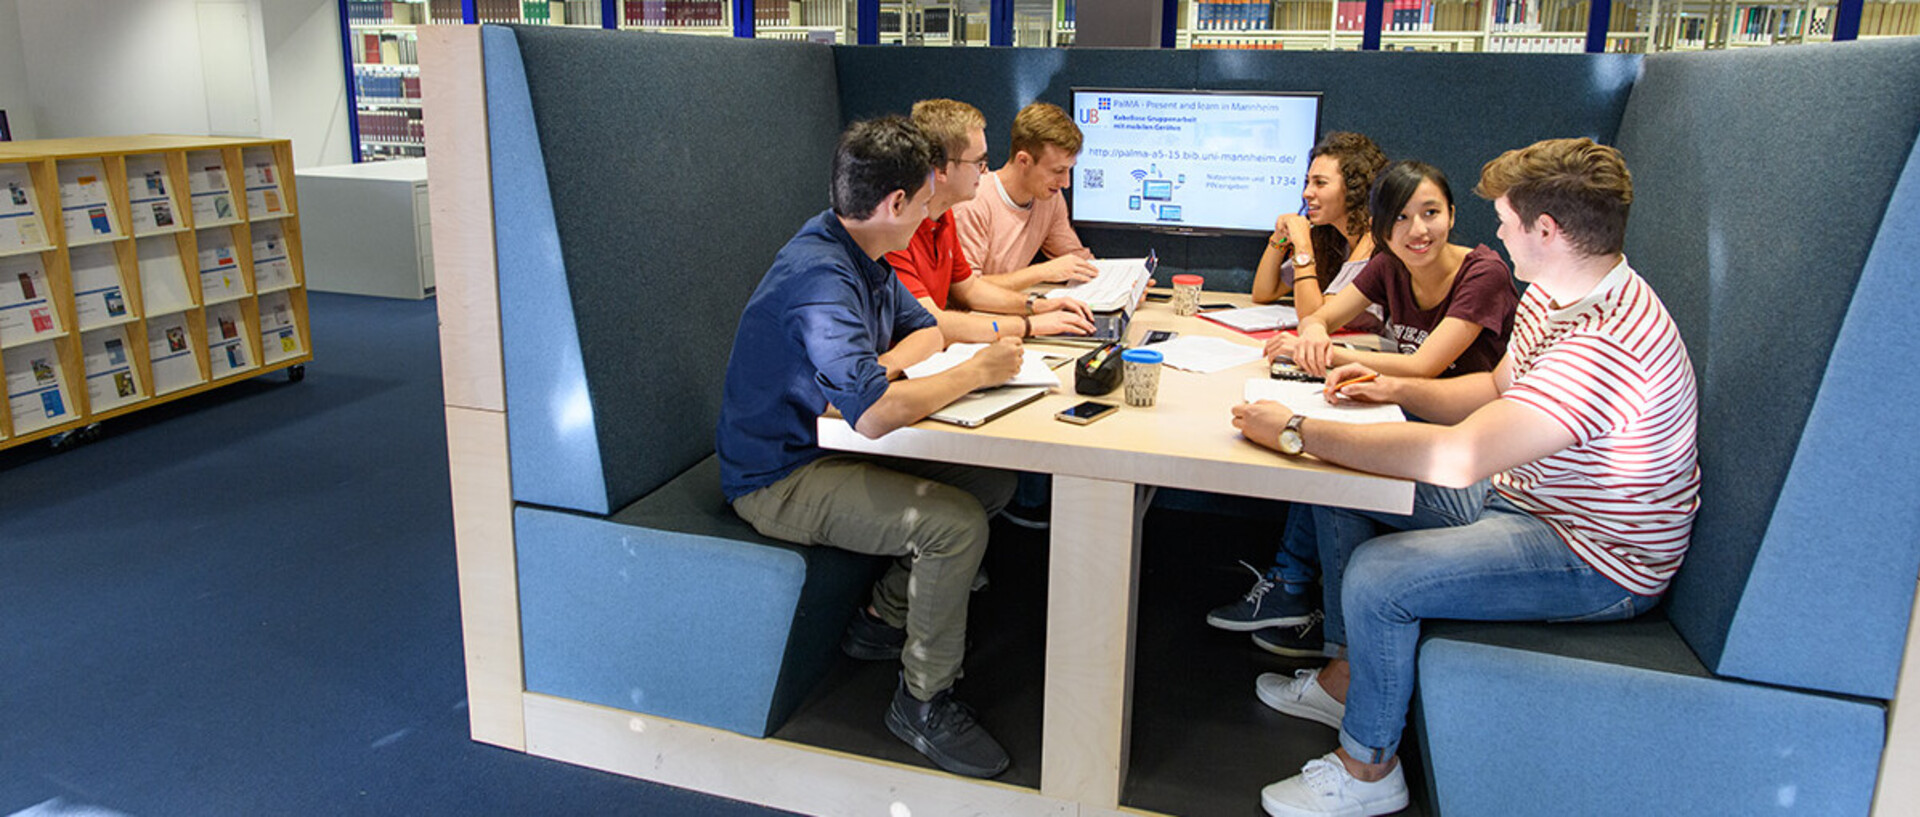 Eine Gruppe von Studierenden sitzt an einem U-förmigem blauen Sofa um einen Tisch. Am Ende des Tisches ist ein Bildschirm.